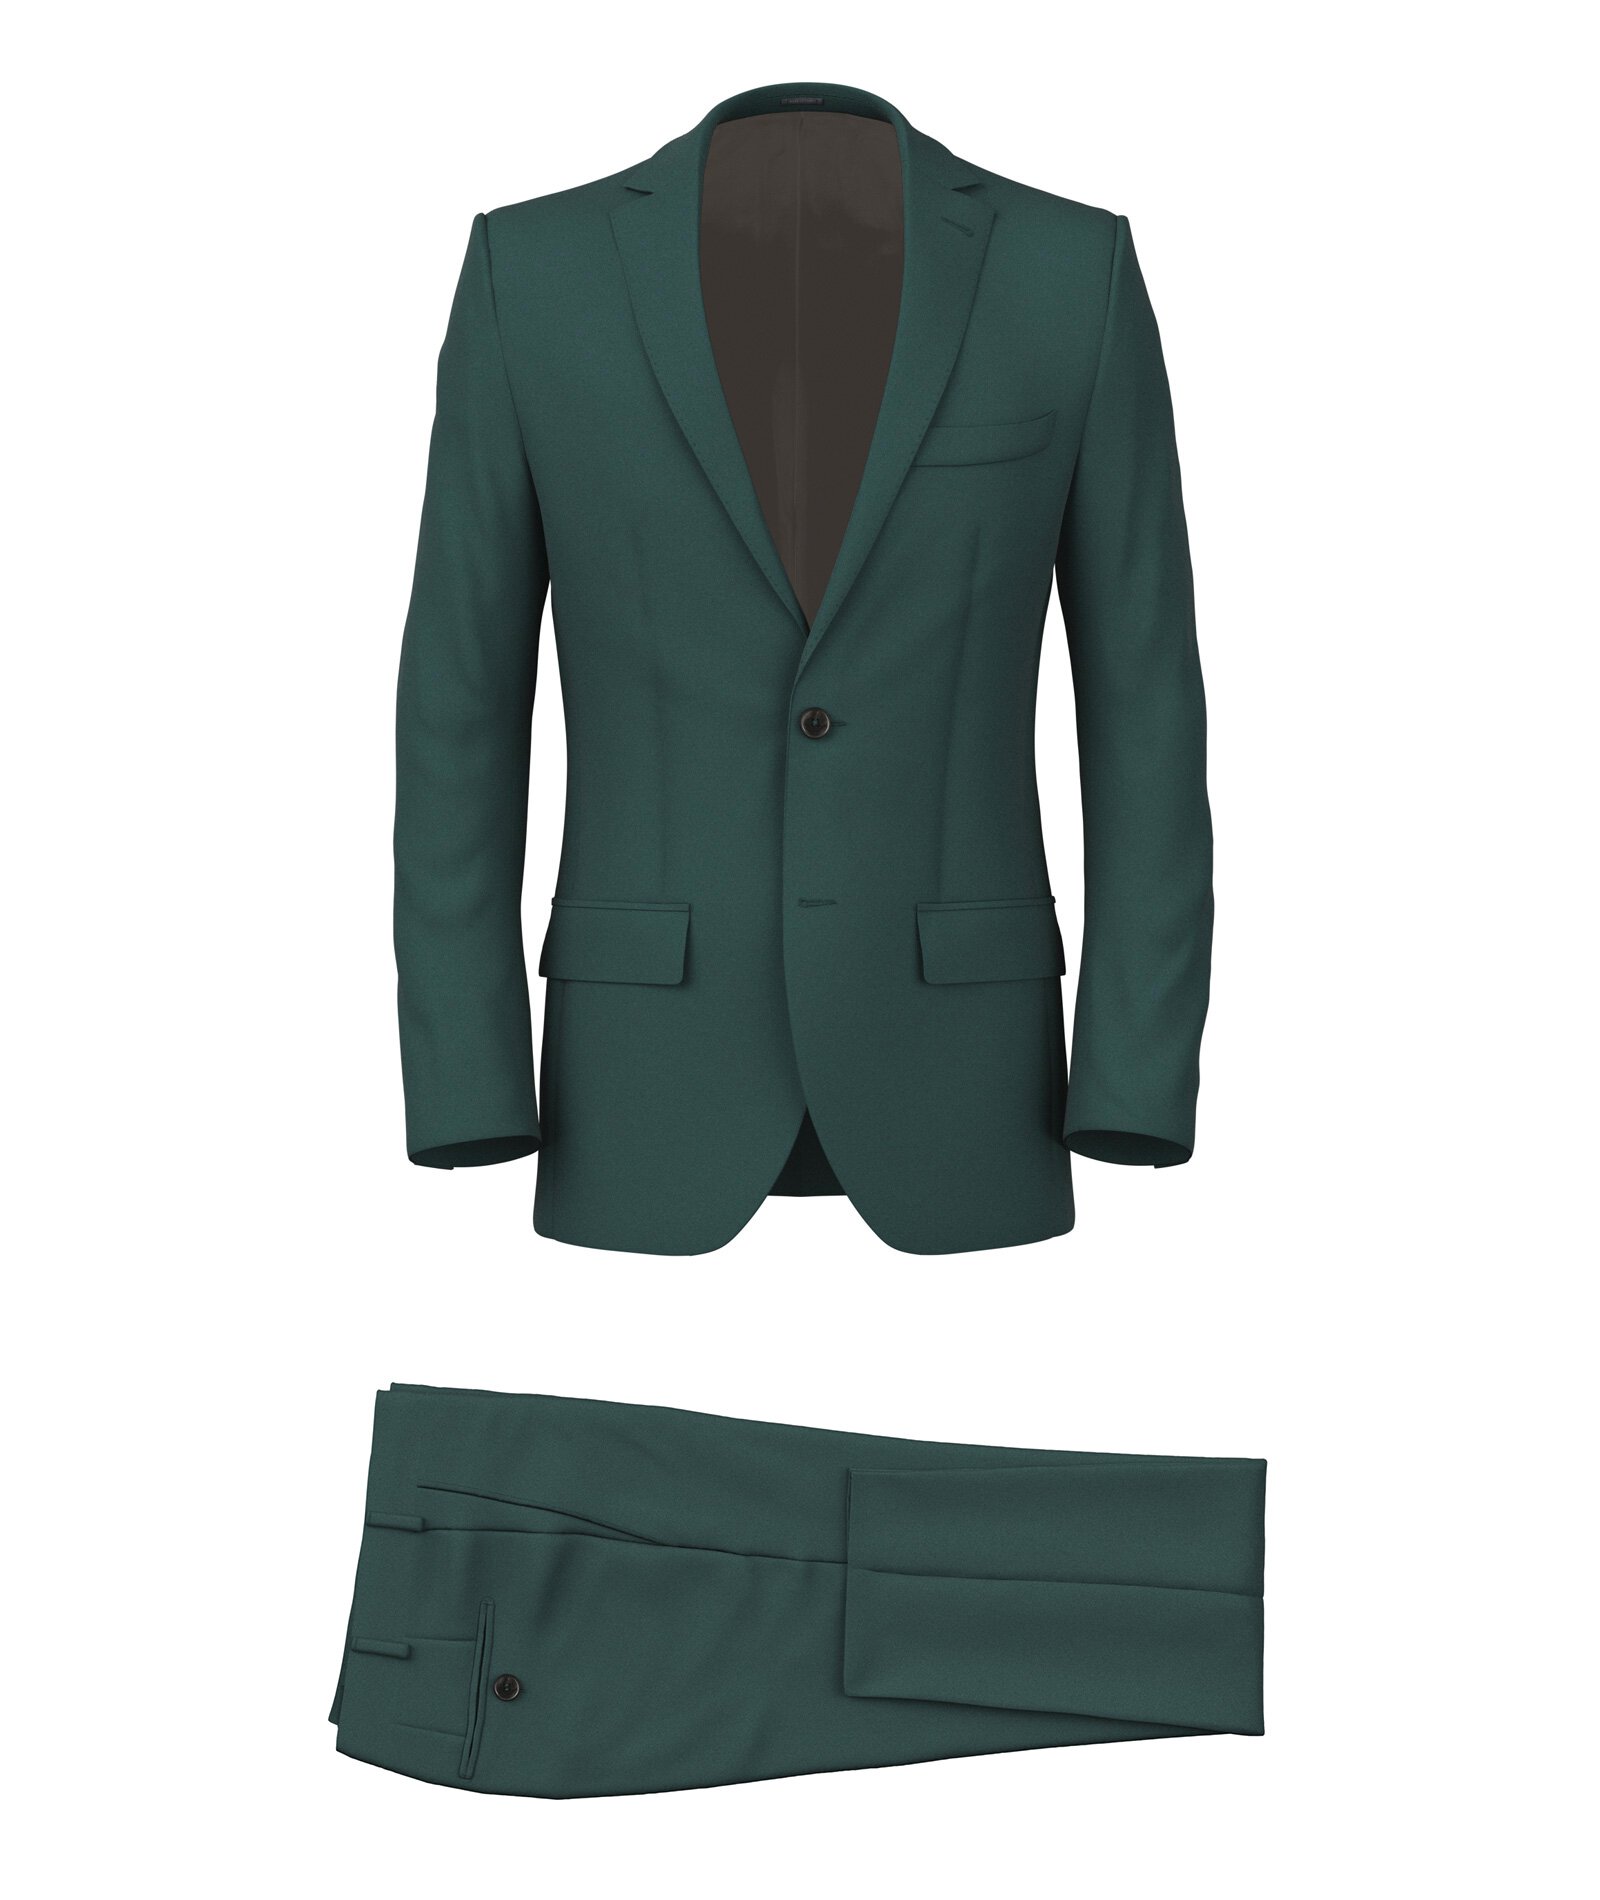 Buy Men Green Textured Slim Fit Wedding Three Piece Suit Online - 636766 |  Van Heusen